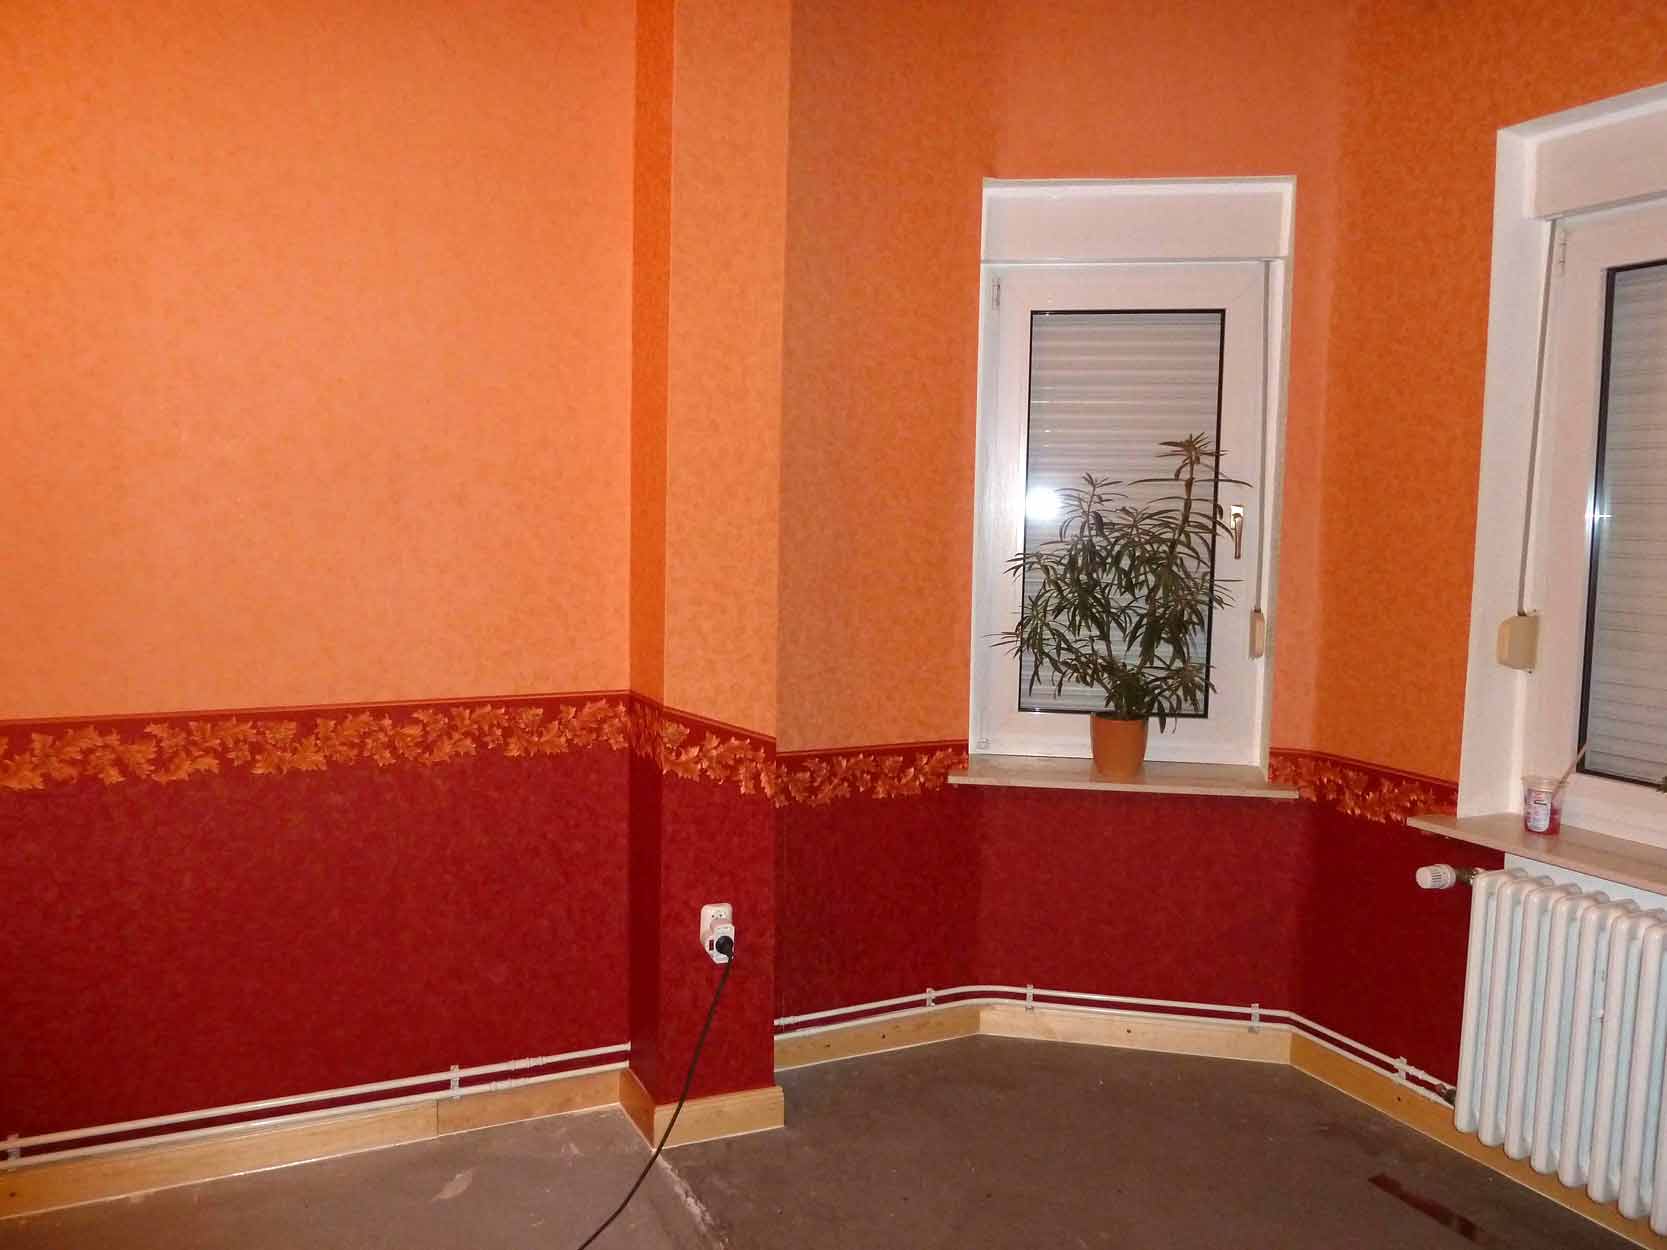 Wohnzimmer renovieren mit Tapeten in orange, rot, mit Tapetenborte